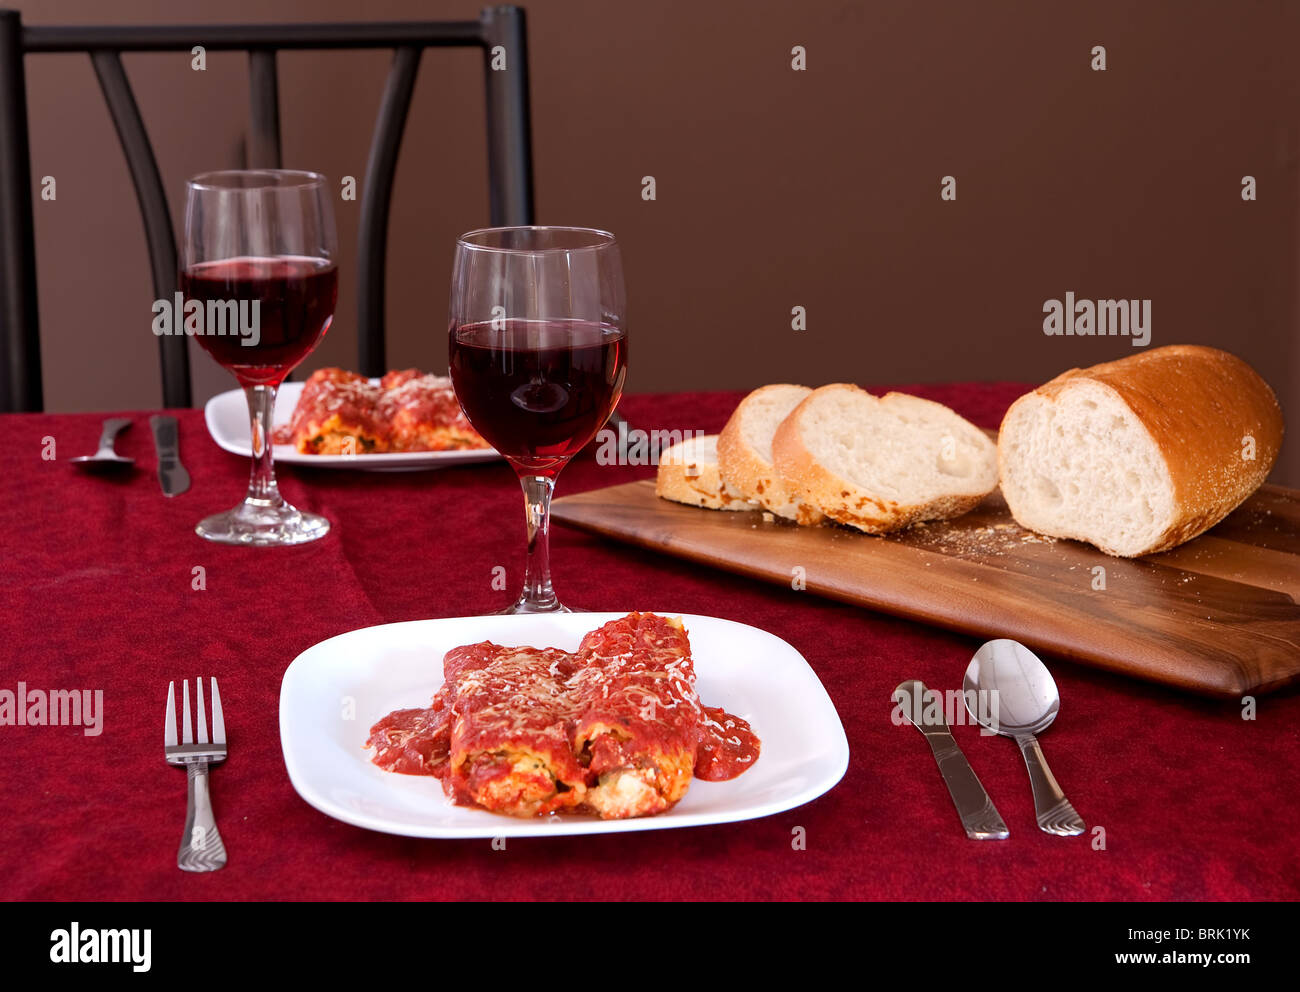 Deux plaques de manicotti farcis, un pain de tranches de pain italien et 2 verres de vin Banque D'Images